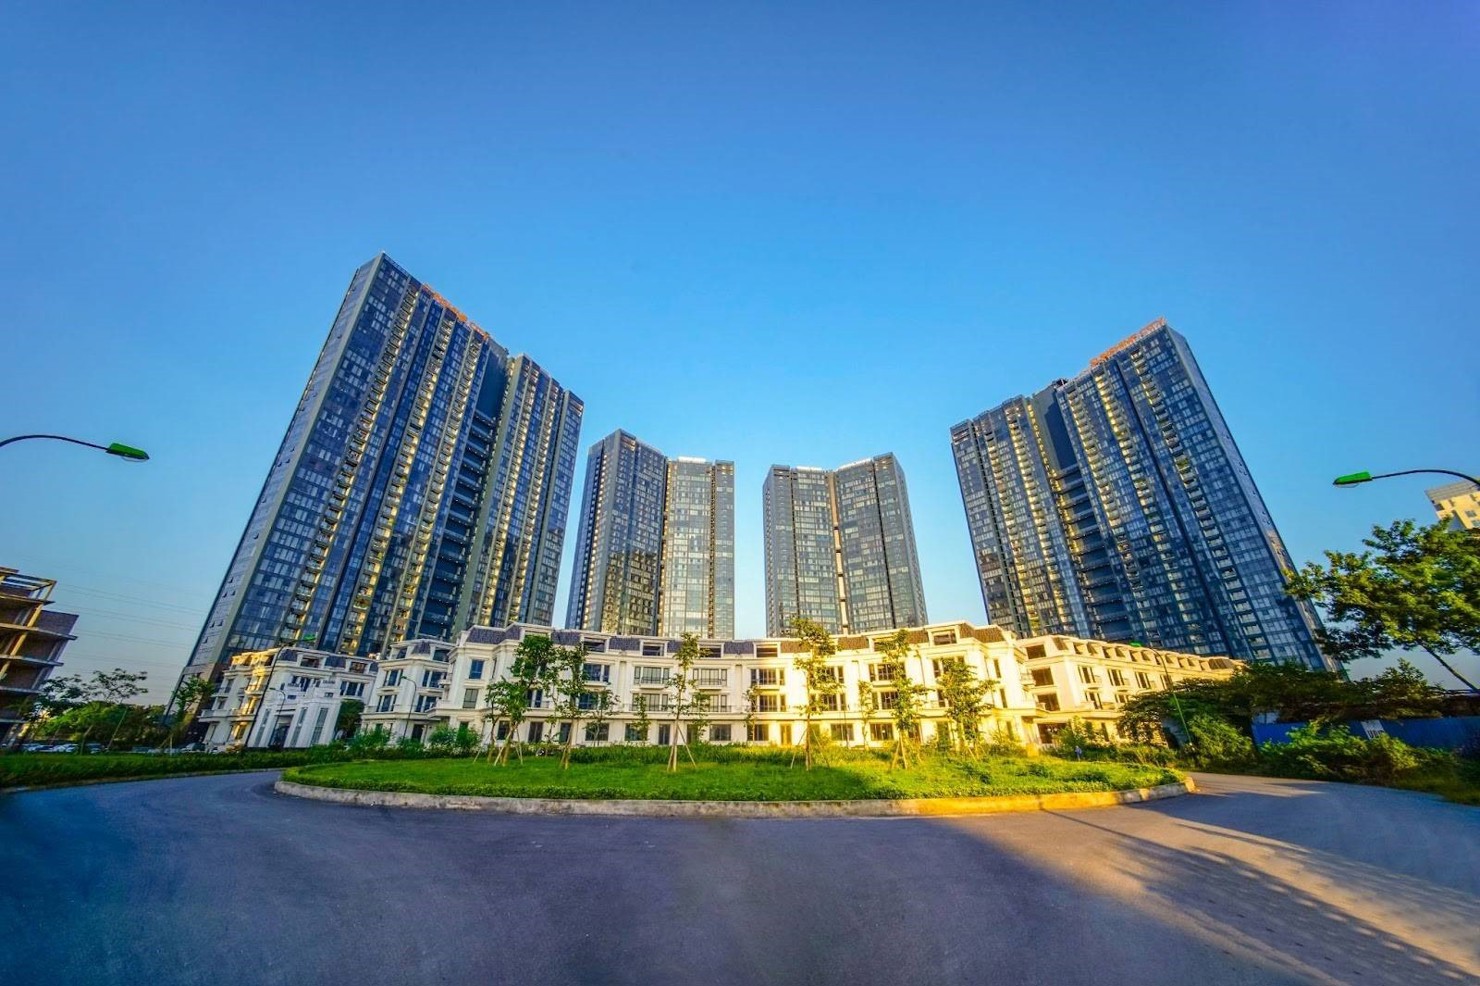 Công ty Cổ phần Phát triển Sunshine Homes luôn có những sản phẩm được khách hàng đánh giá cao về chất lượng. Ảnh Hồng Hạnh.